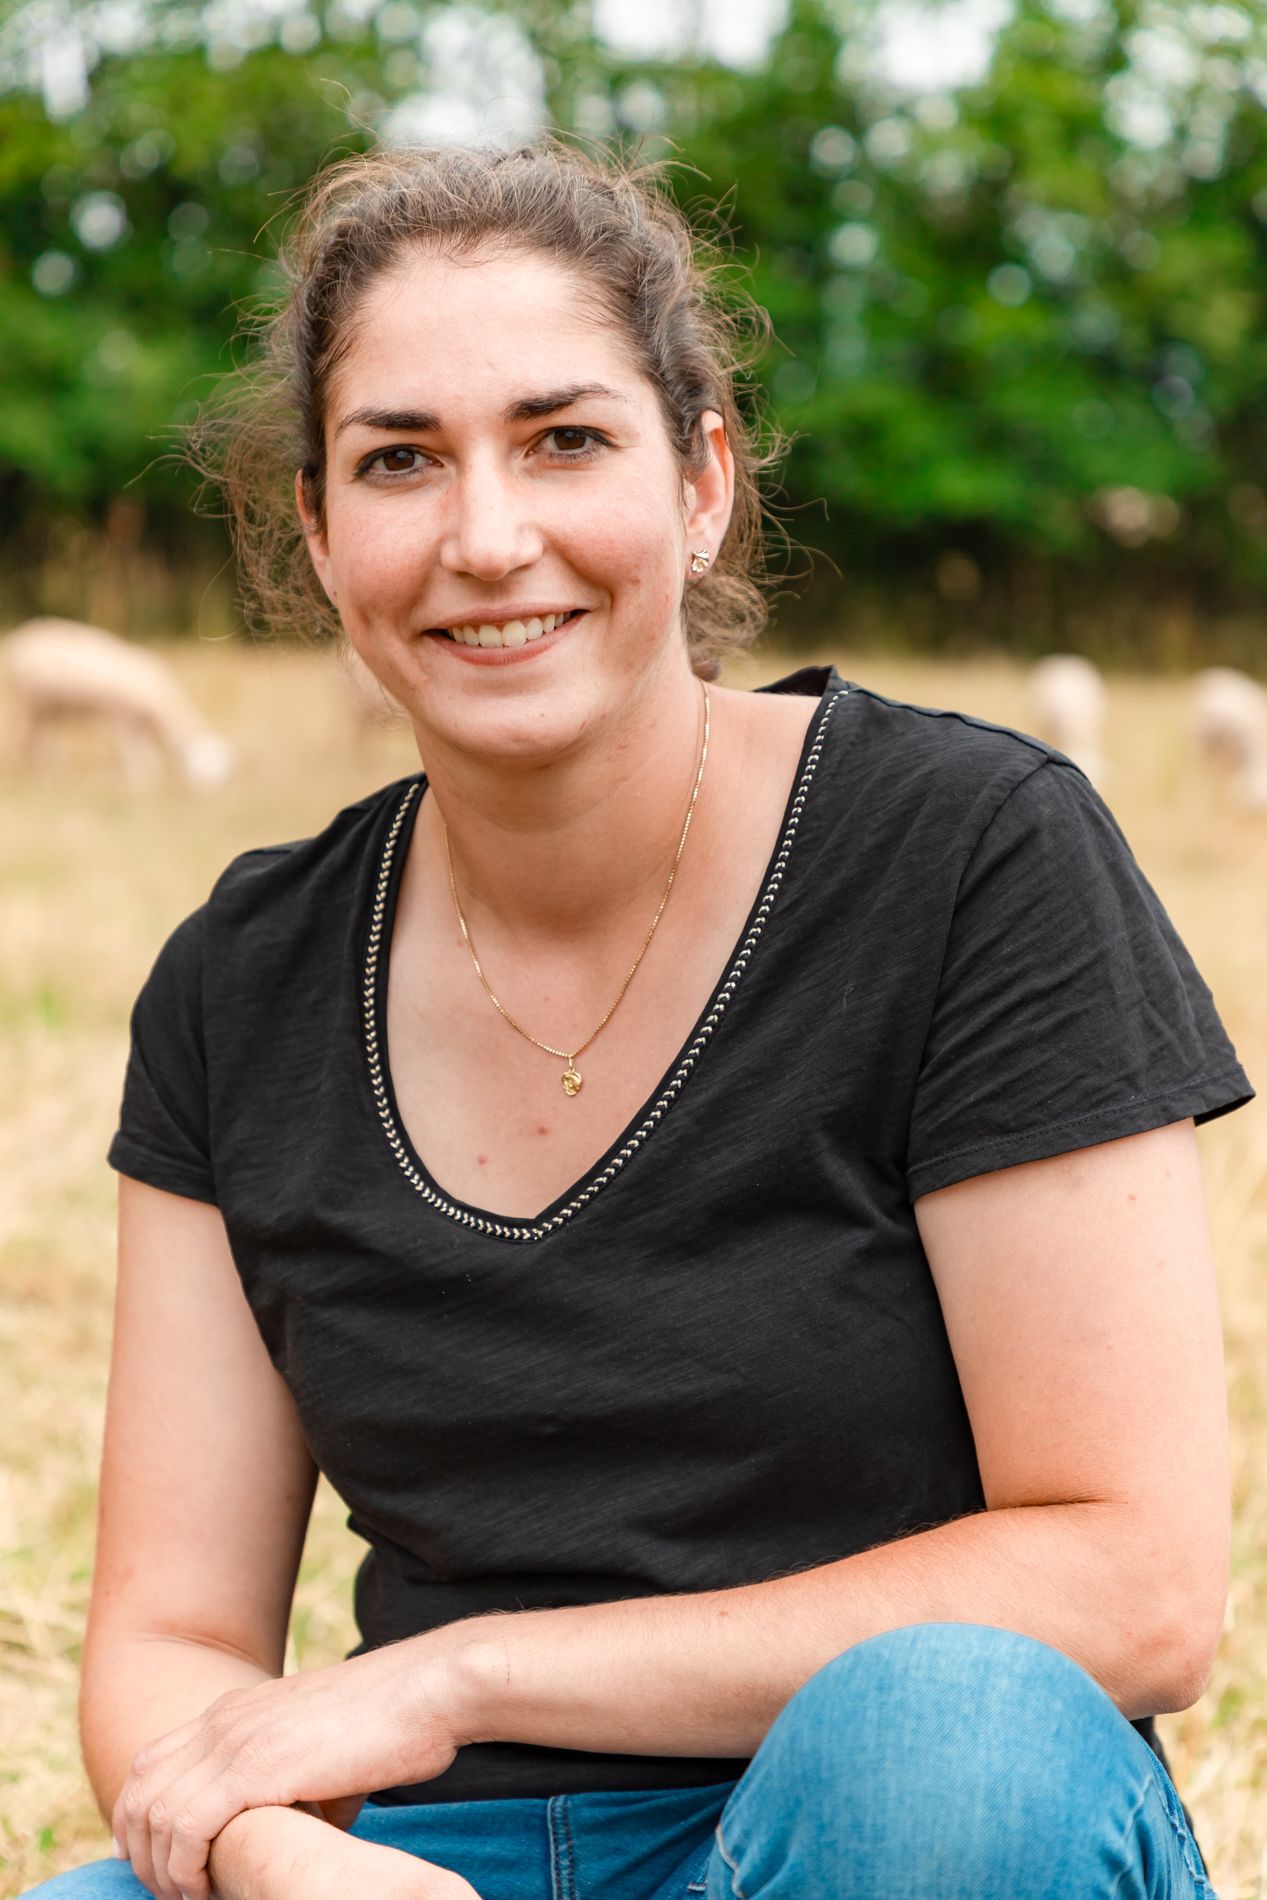 Une agricultrice de l'Yonne parmi les finalistes du concours Graines d'agriculteurs